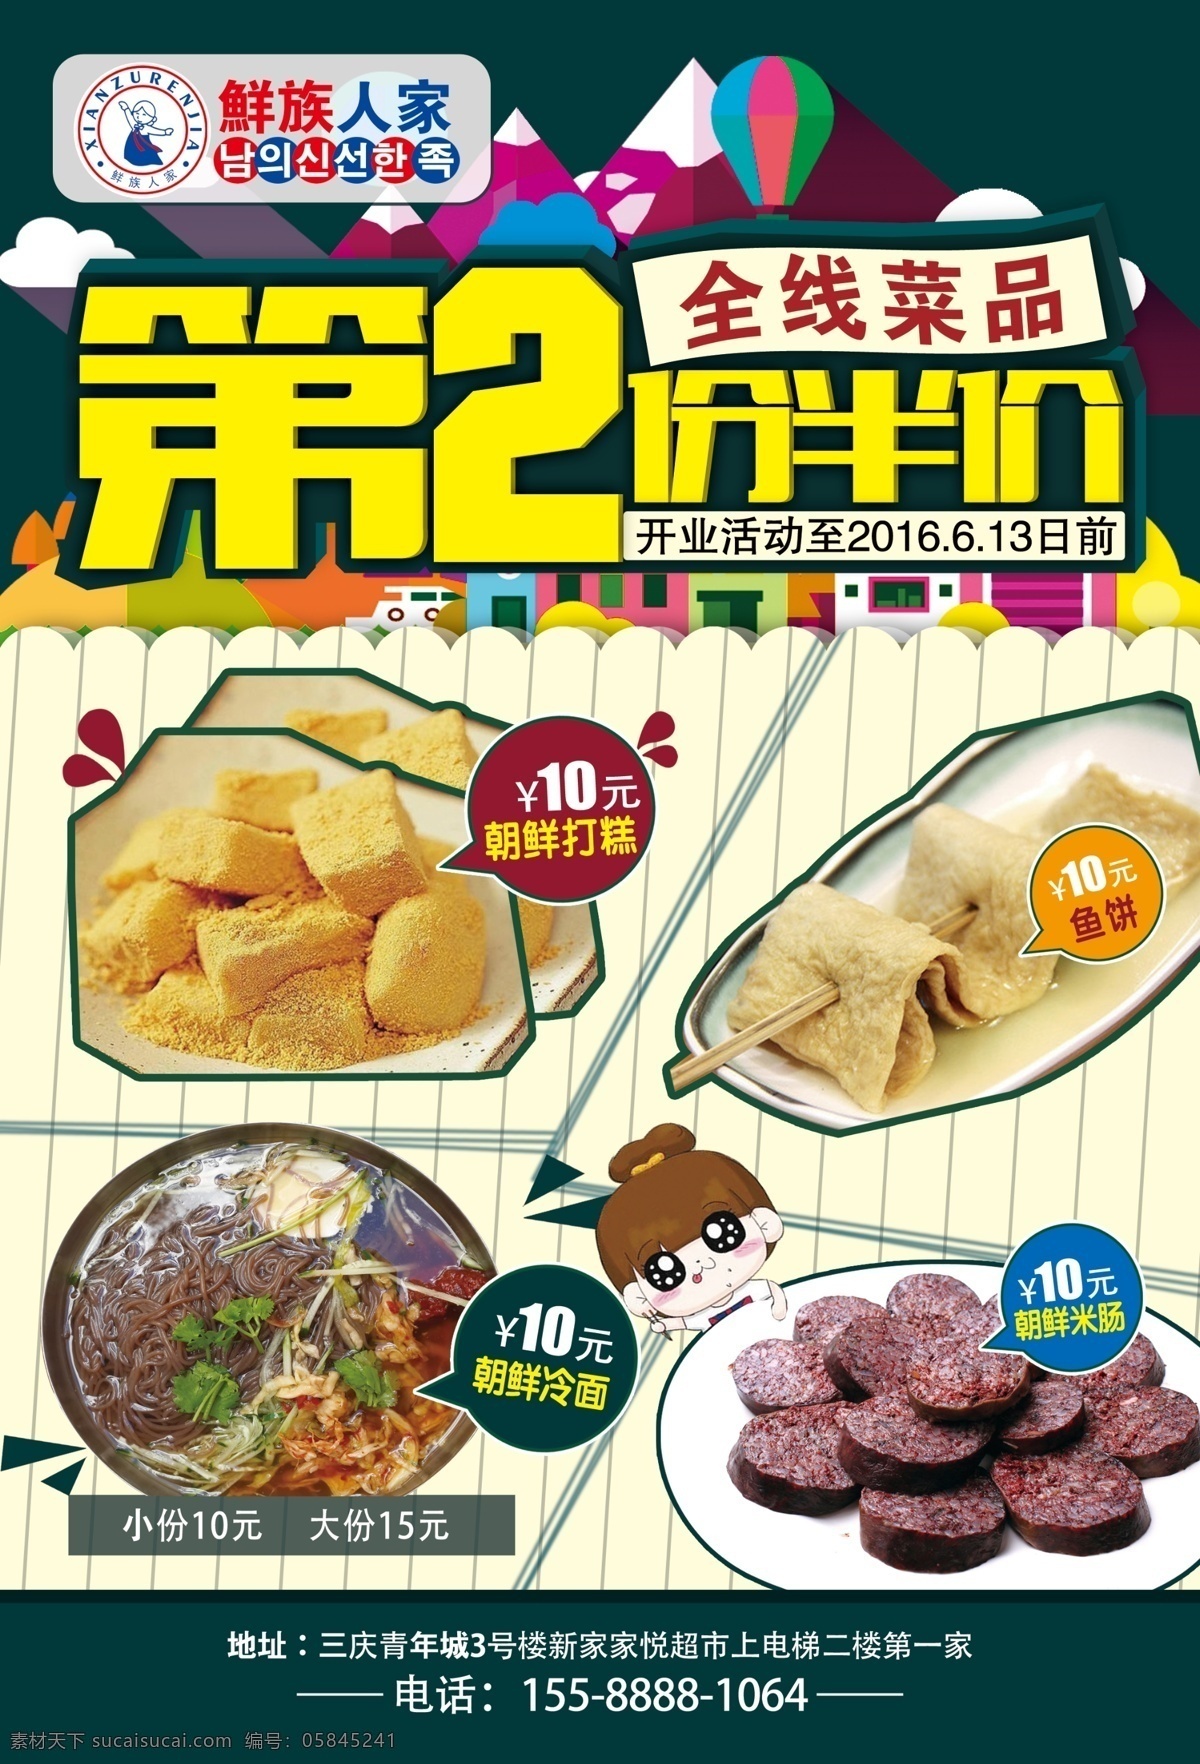 韩国料理海报 饭店海报 韩国料理 鲜族人家 朝鲜 韩国 料理 海报 第二份 半价